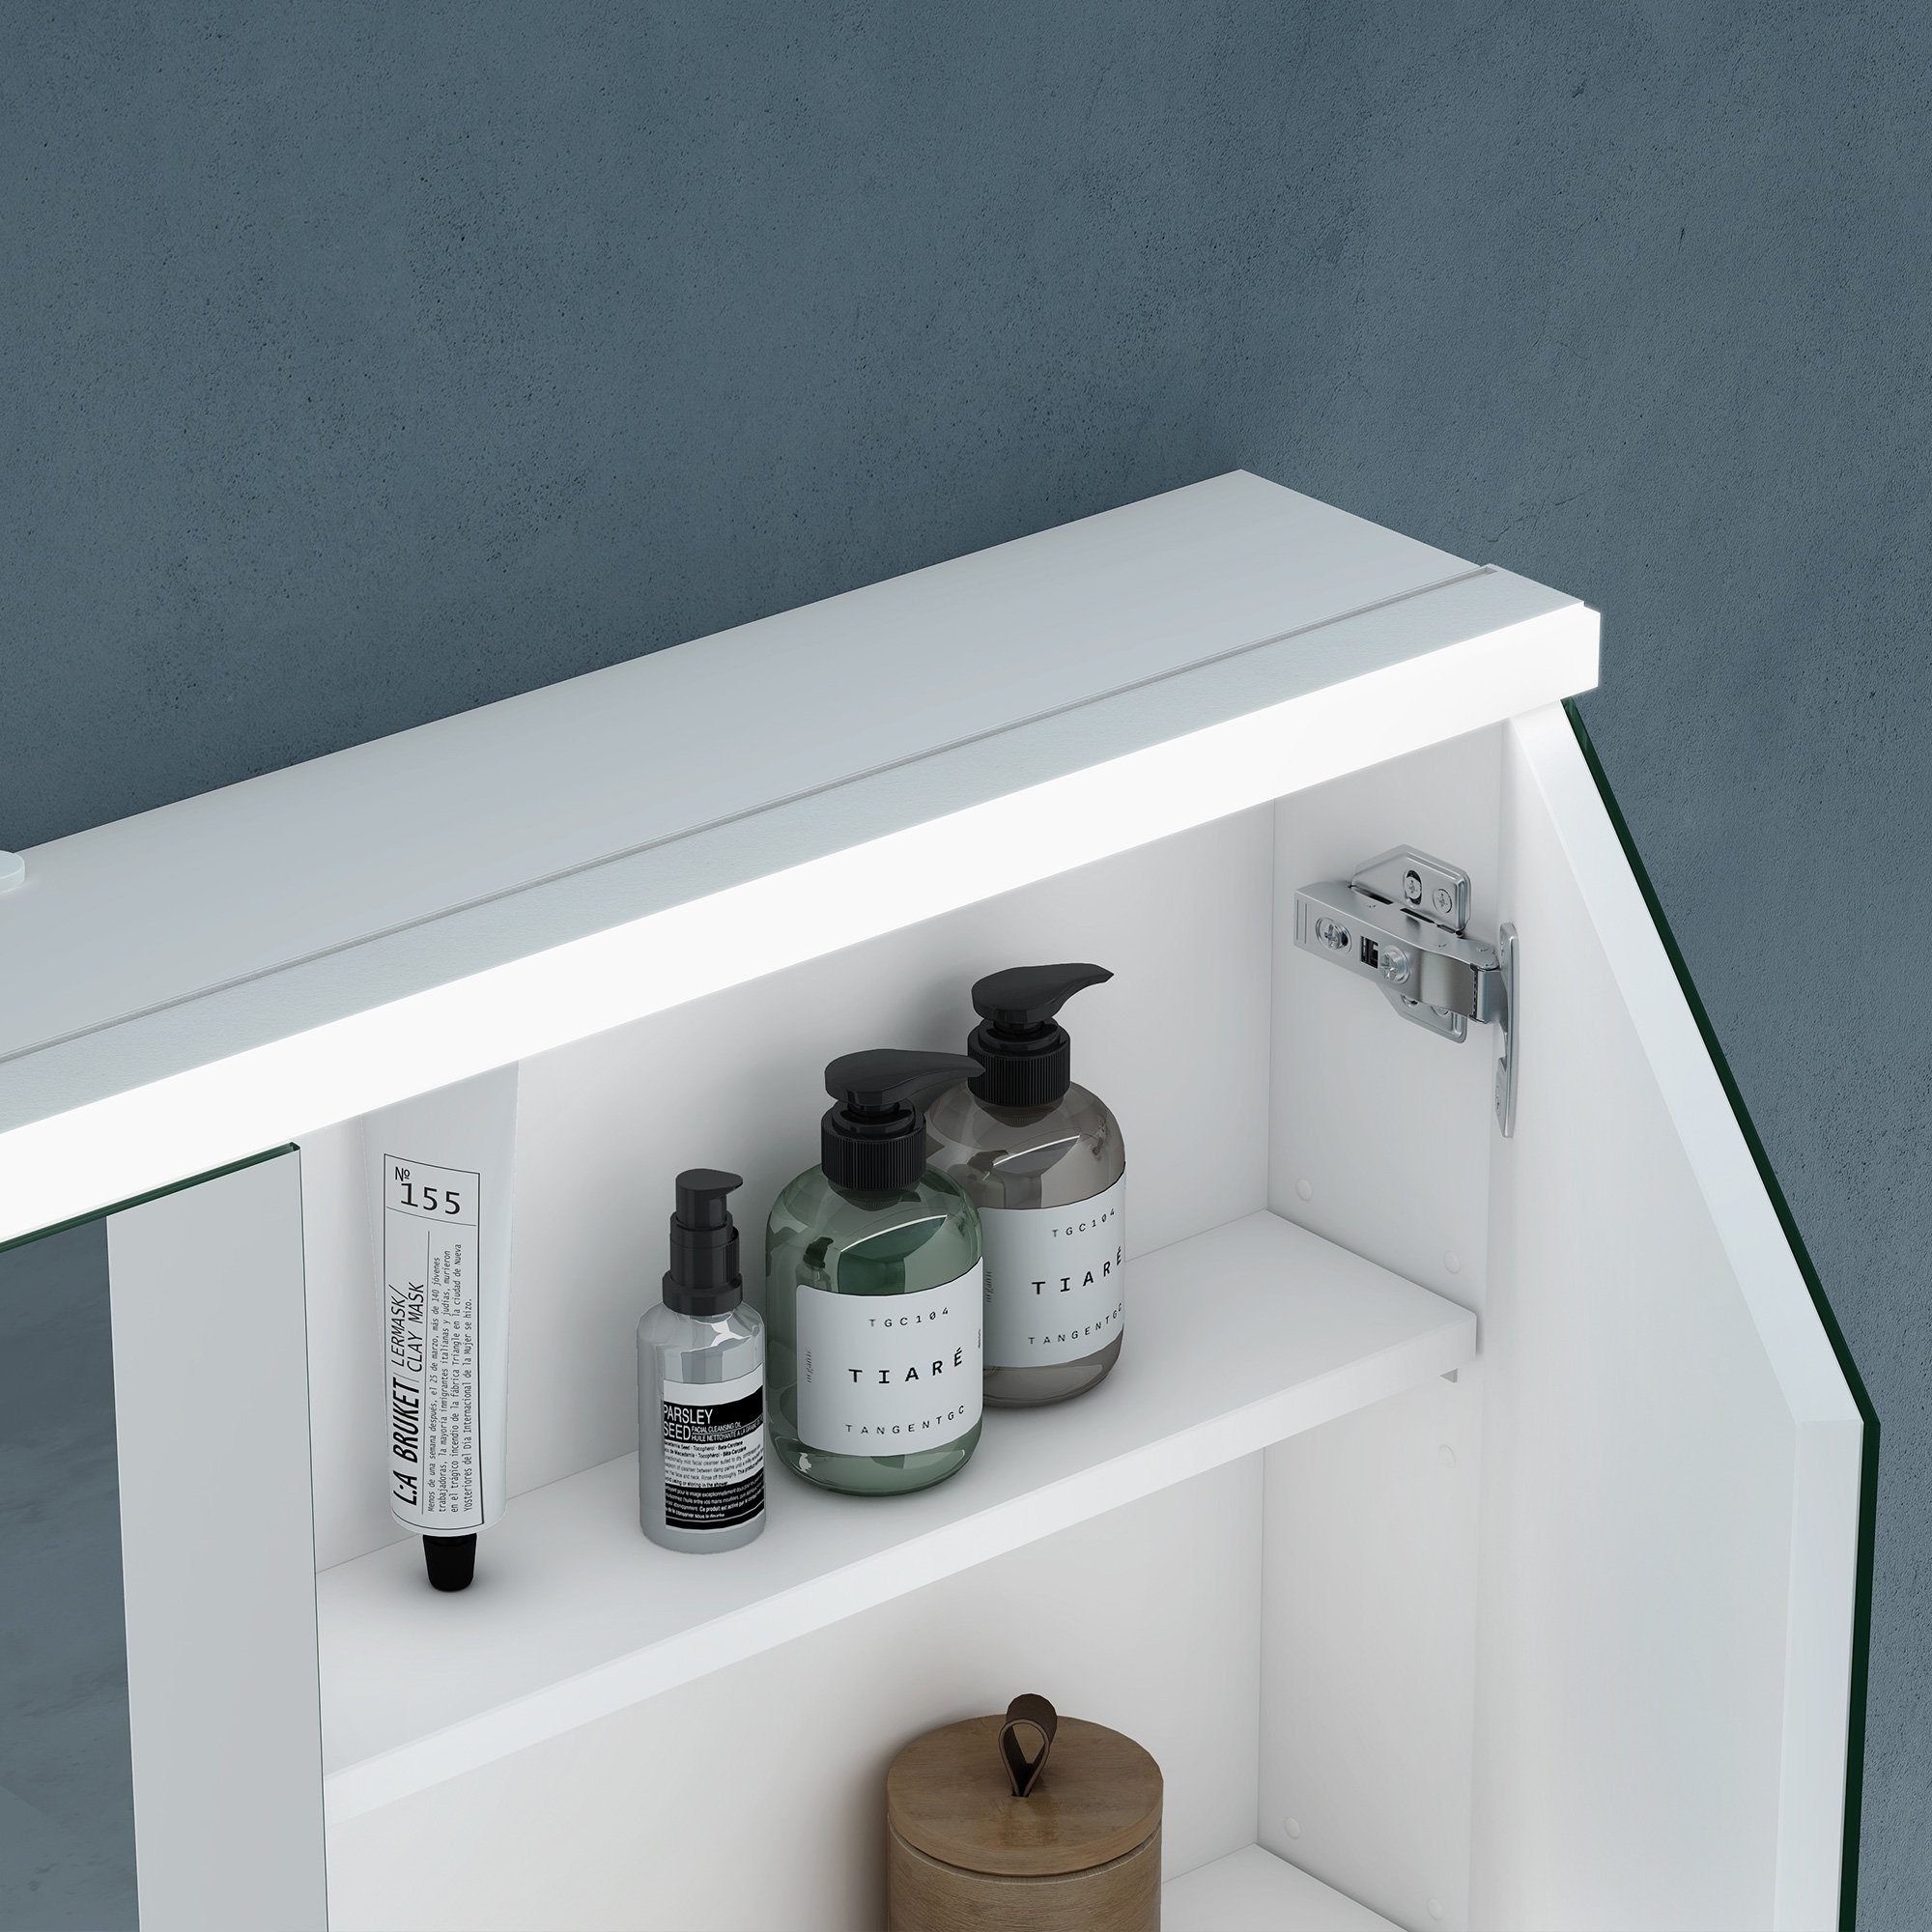 matt Spiegelschrank Spiegelschrank03 Regalbrett verstellbarem Badezimmerspiegelschrank weiß doporro LED-Spiegel